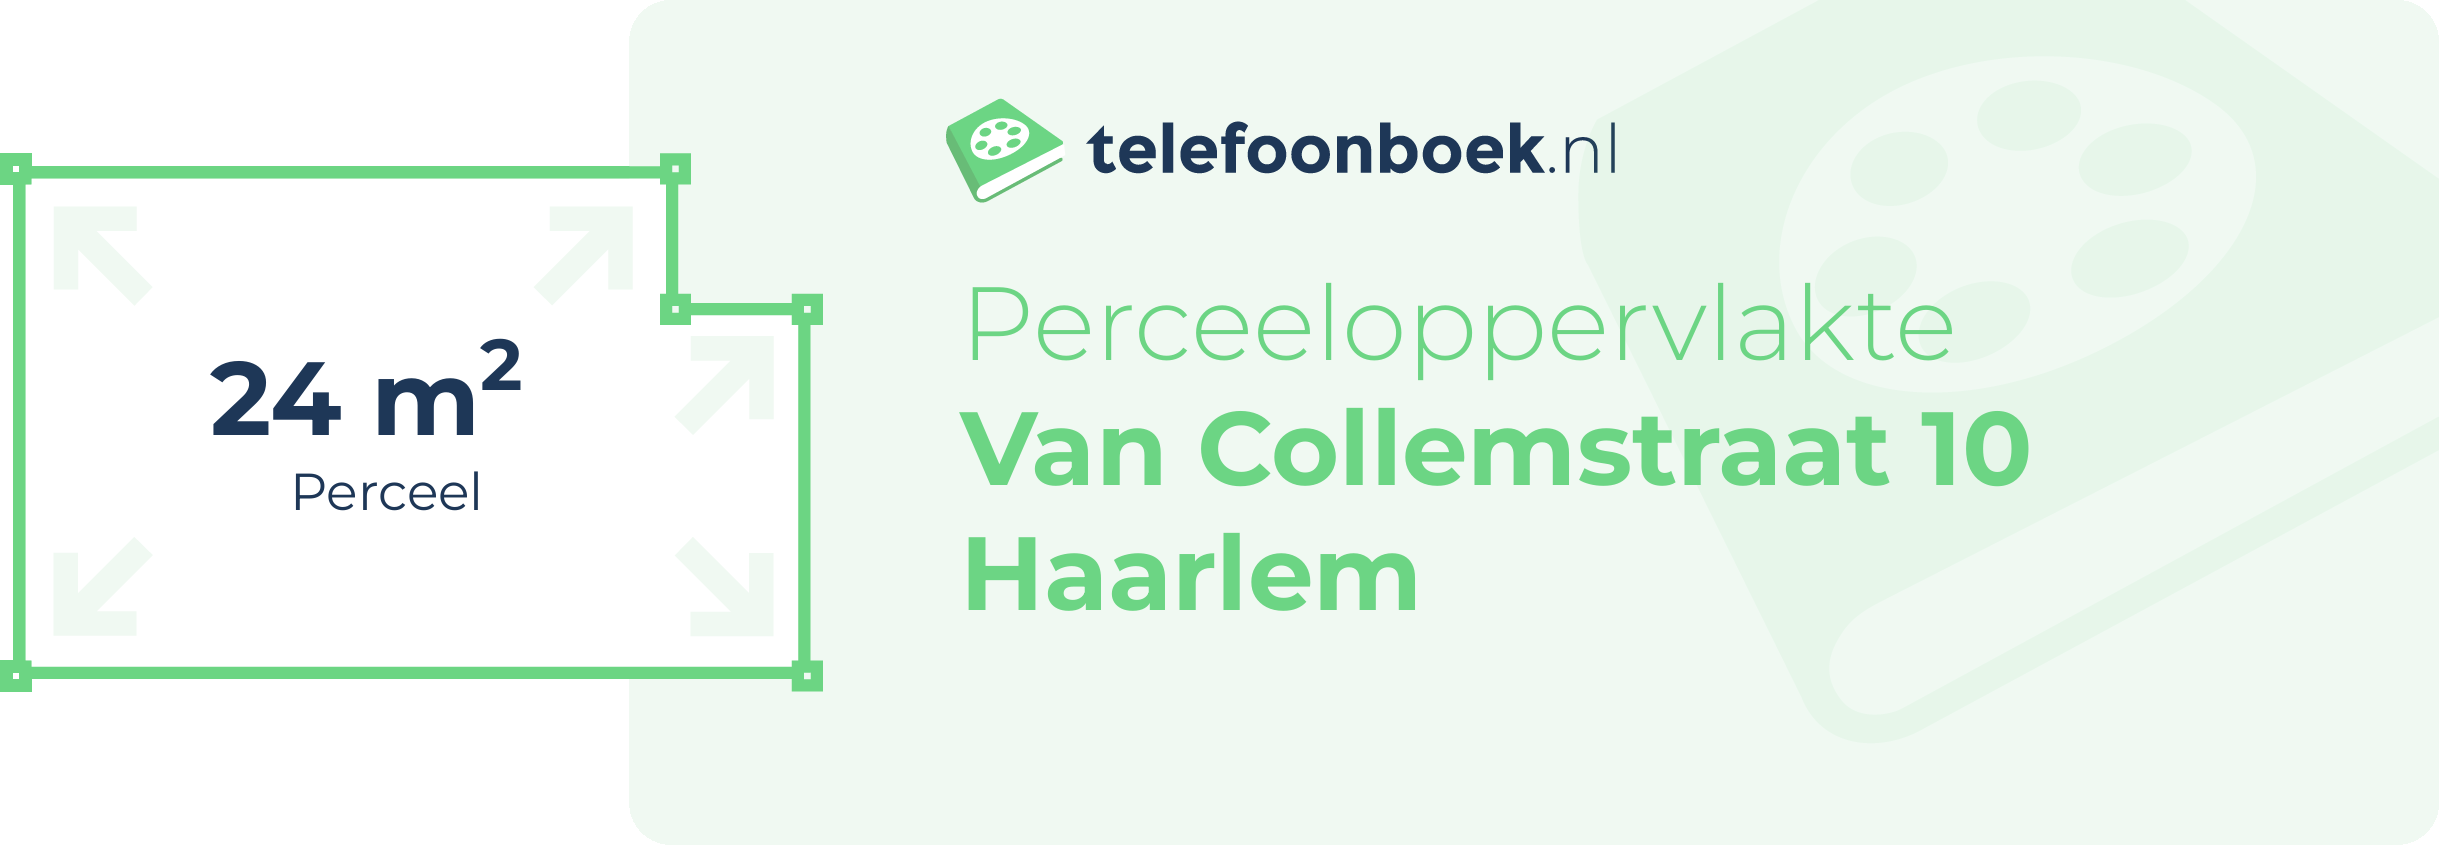 Perceeloppervlakte Van Collemstraat 10 Haarlem